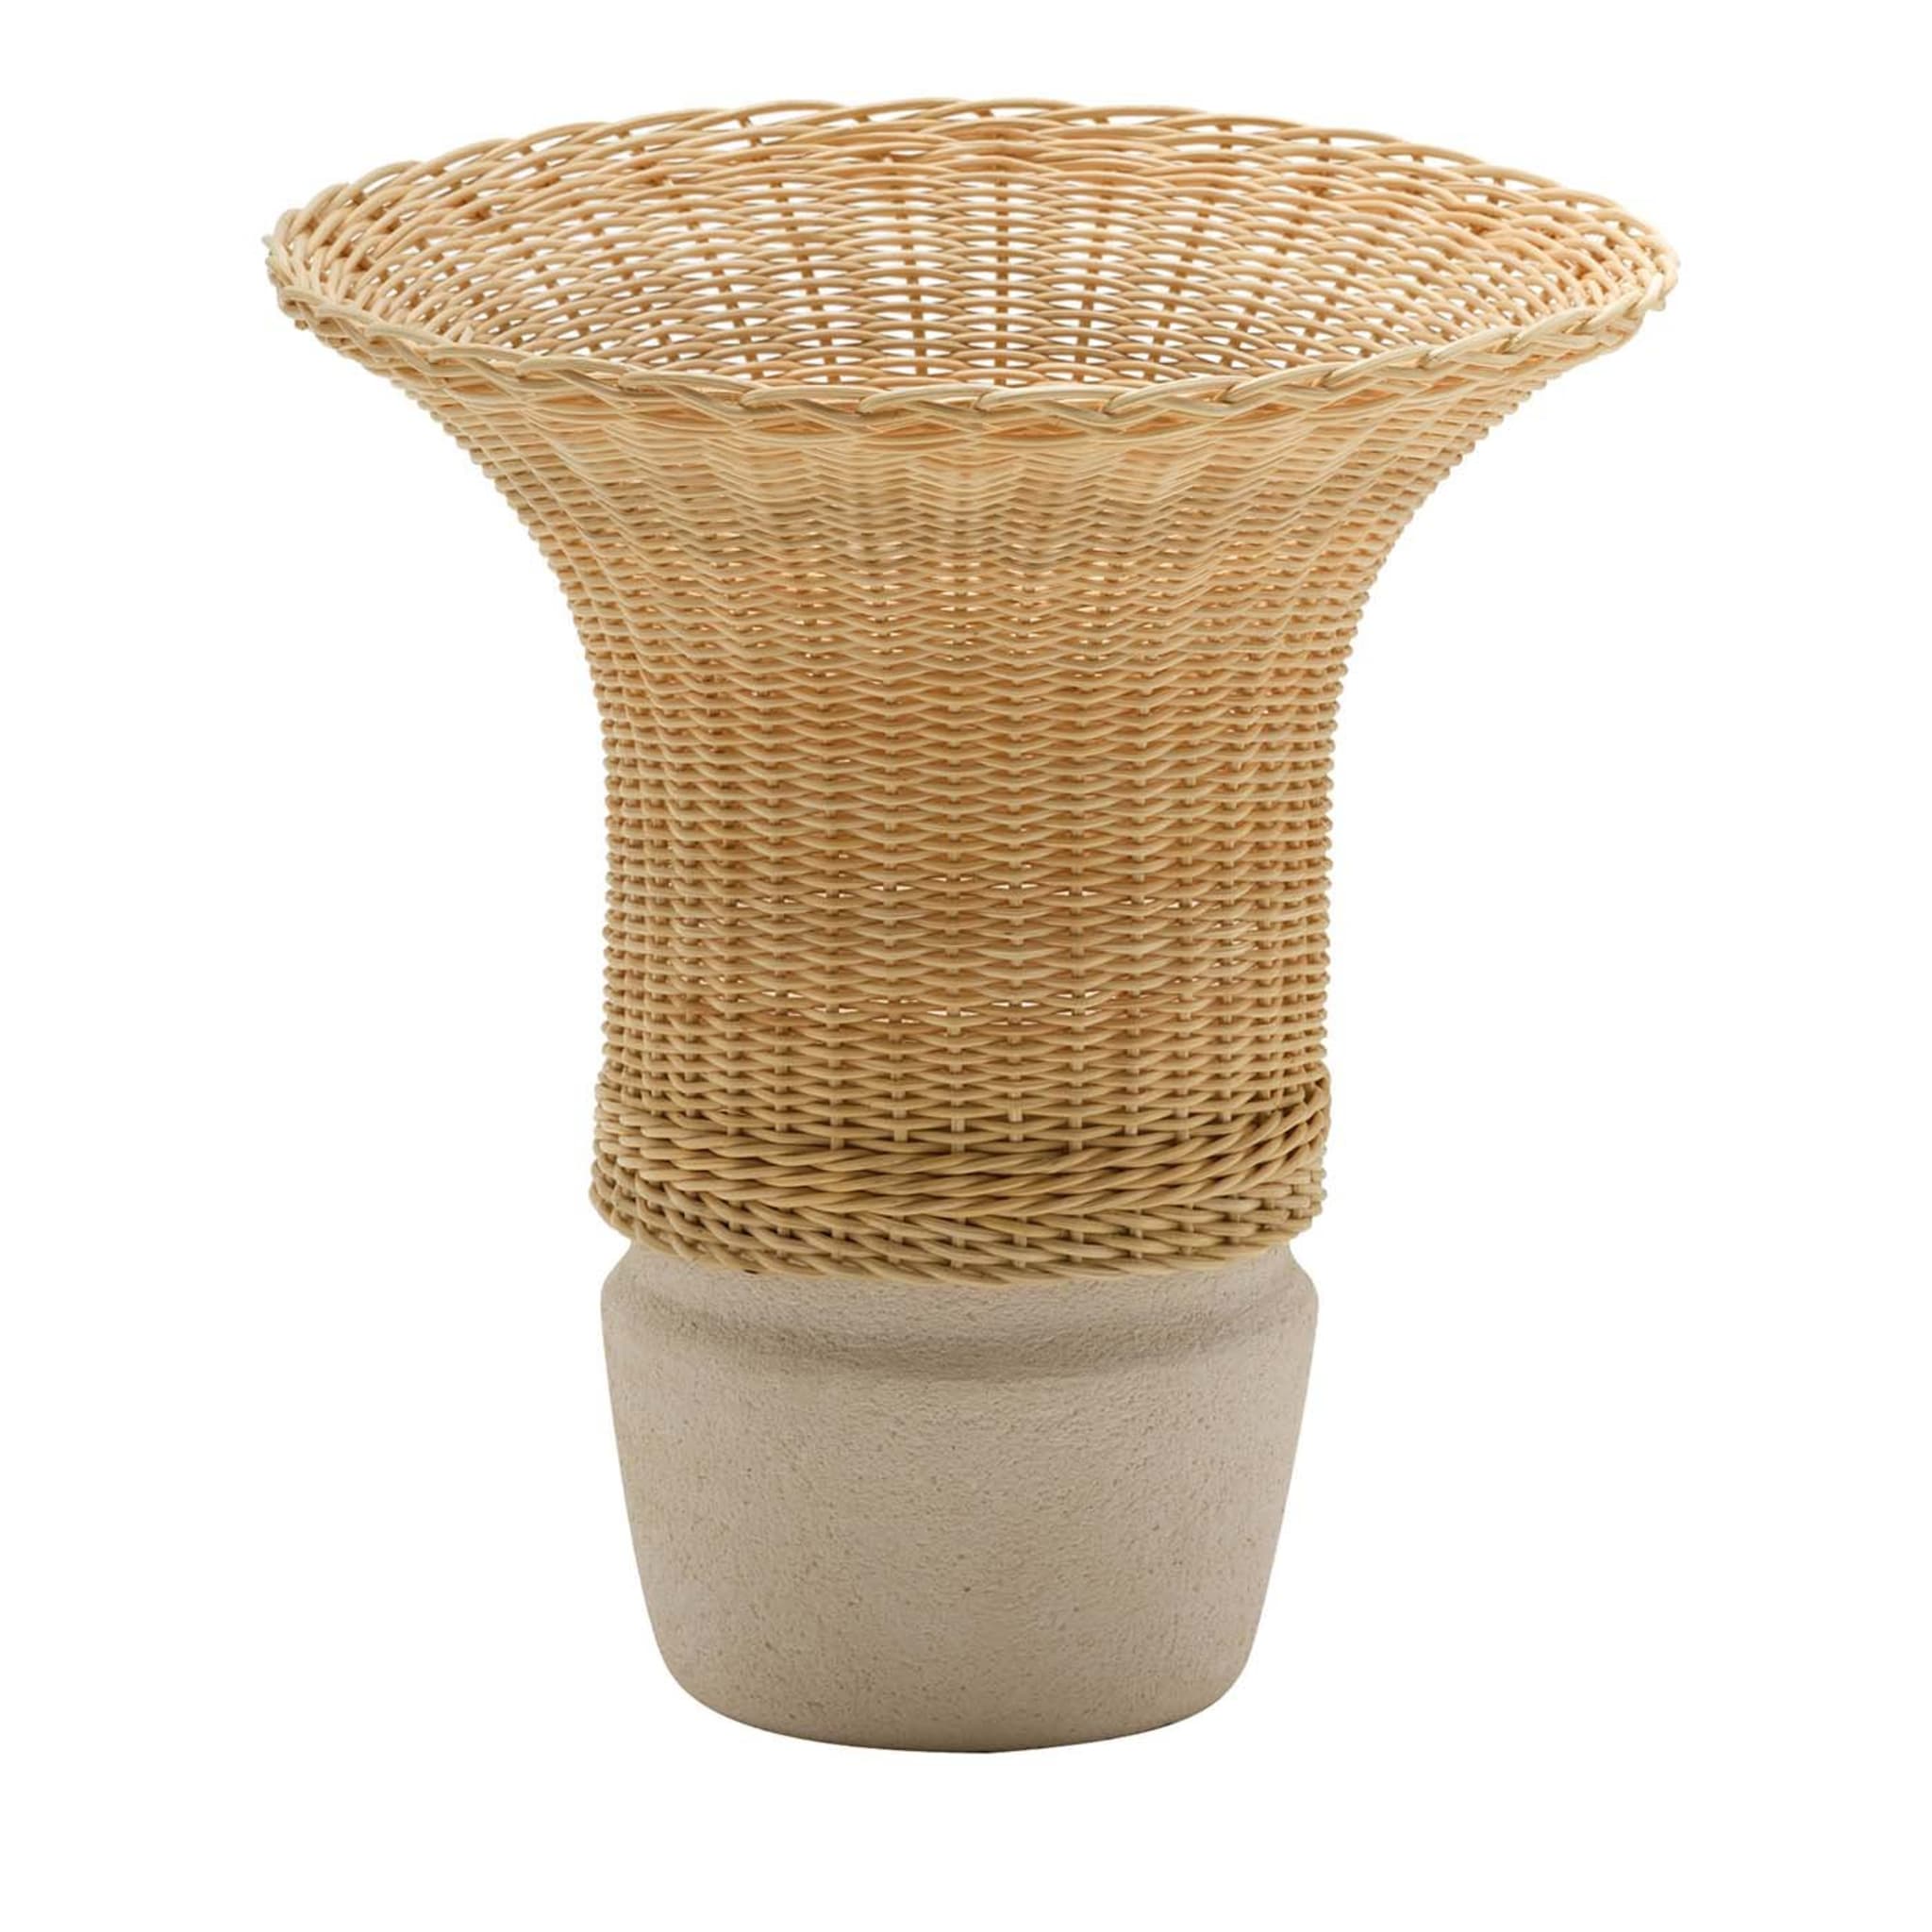 Nodo Wicker Vase by Intreccio Lab - Main view